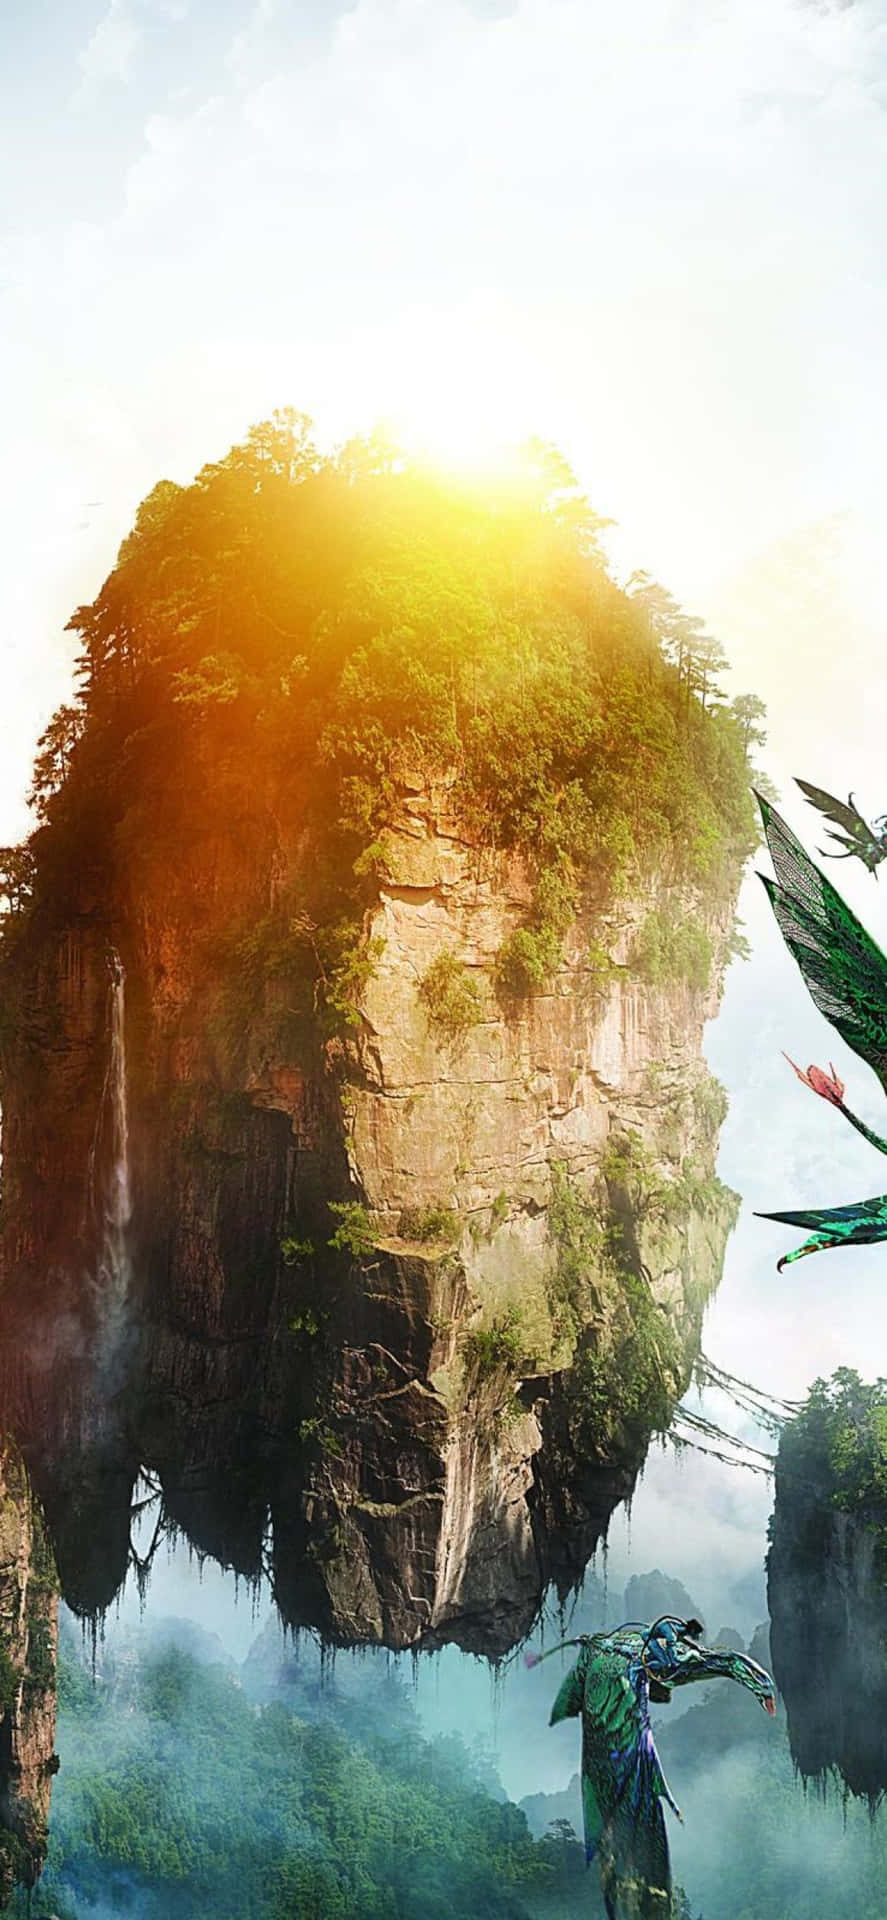 Slideshow Avatar Frontiers of Pandora First Official Screenshots